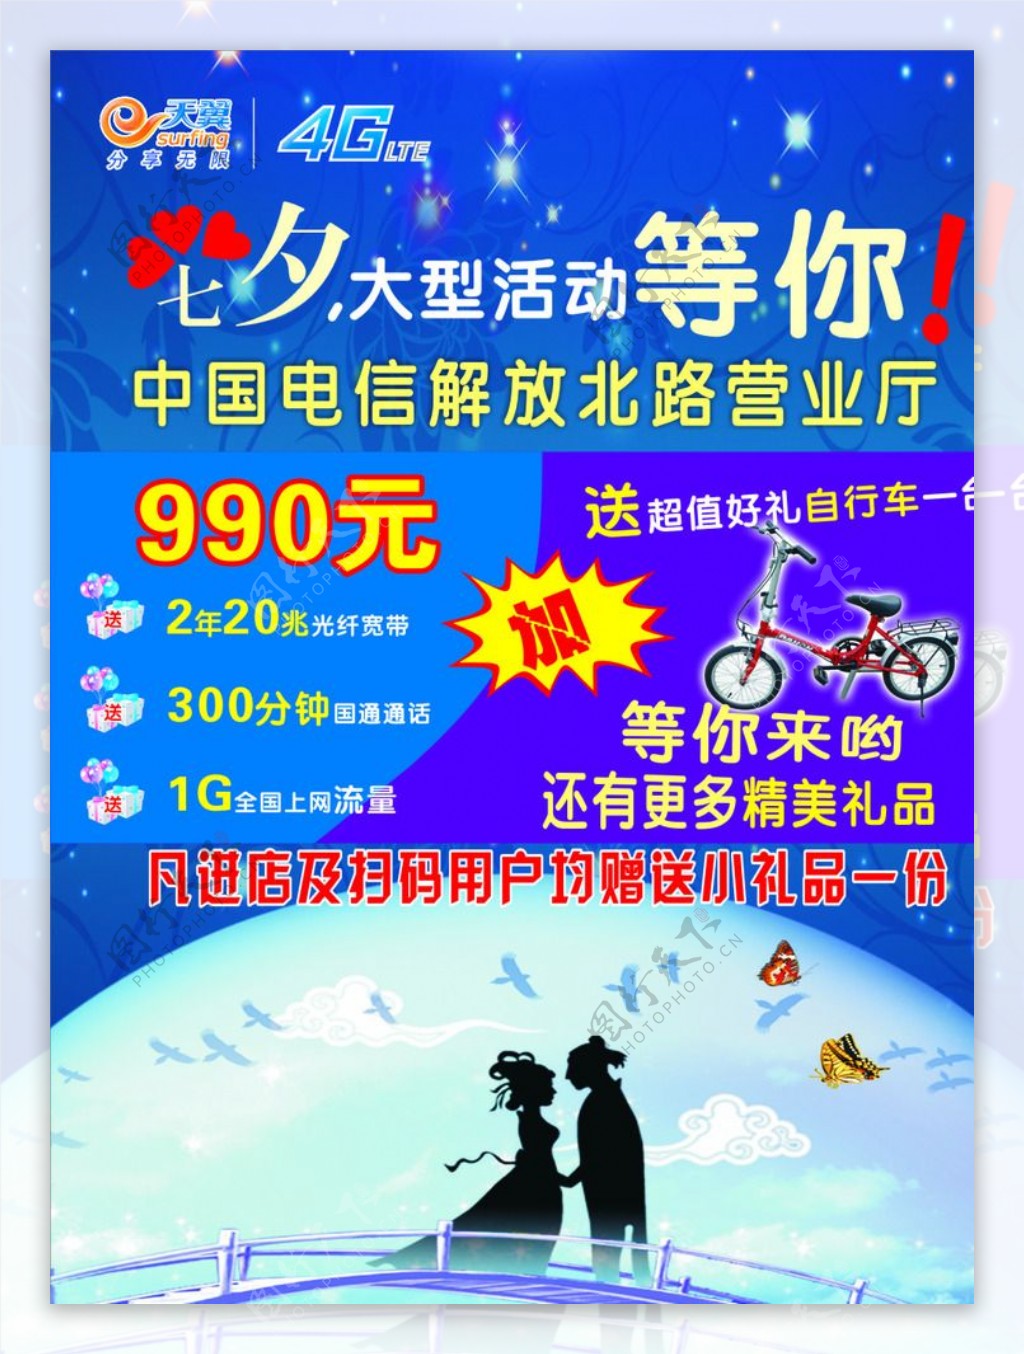 中国电信4G图片